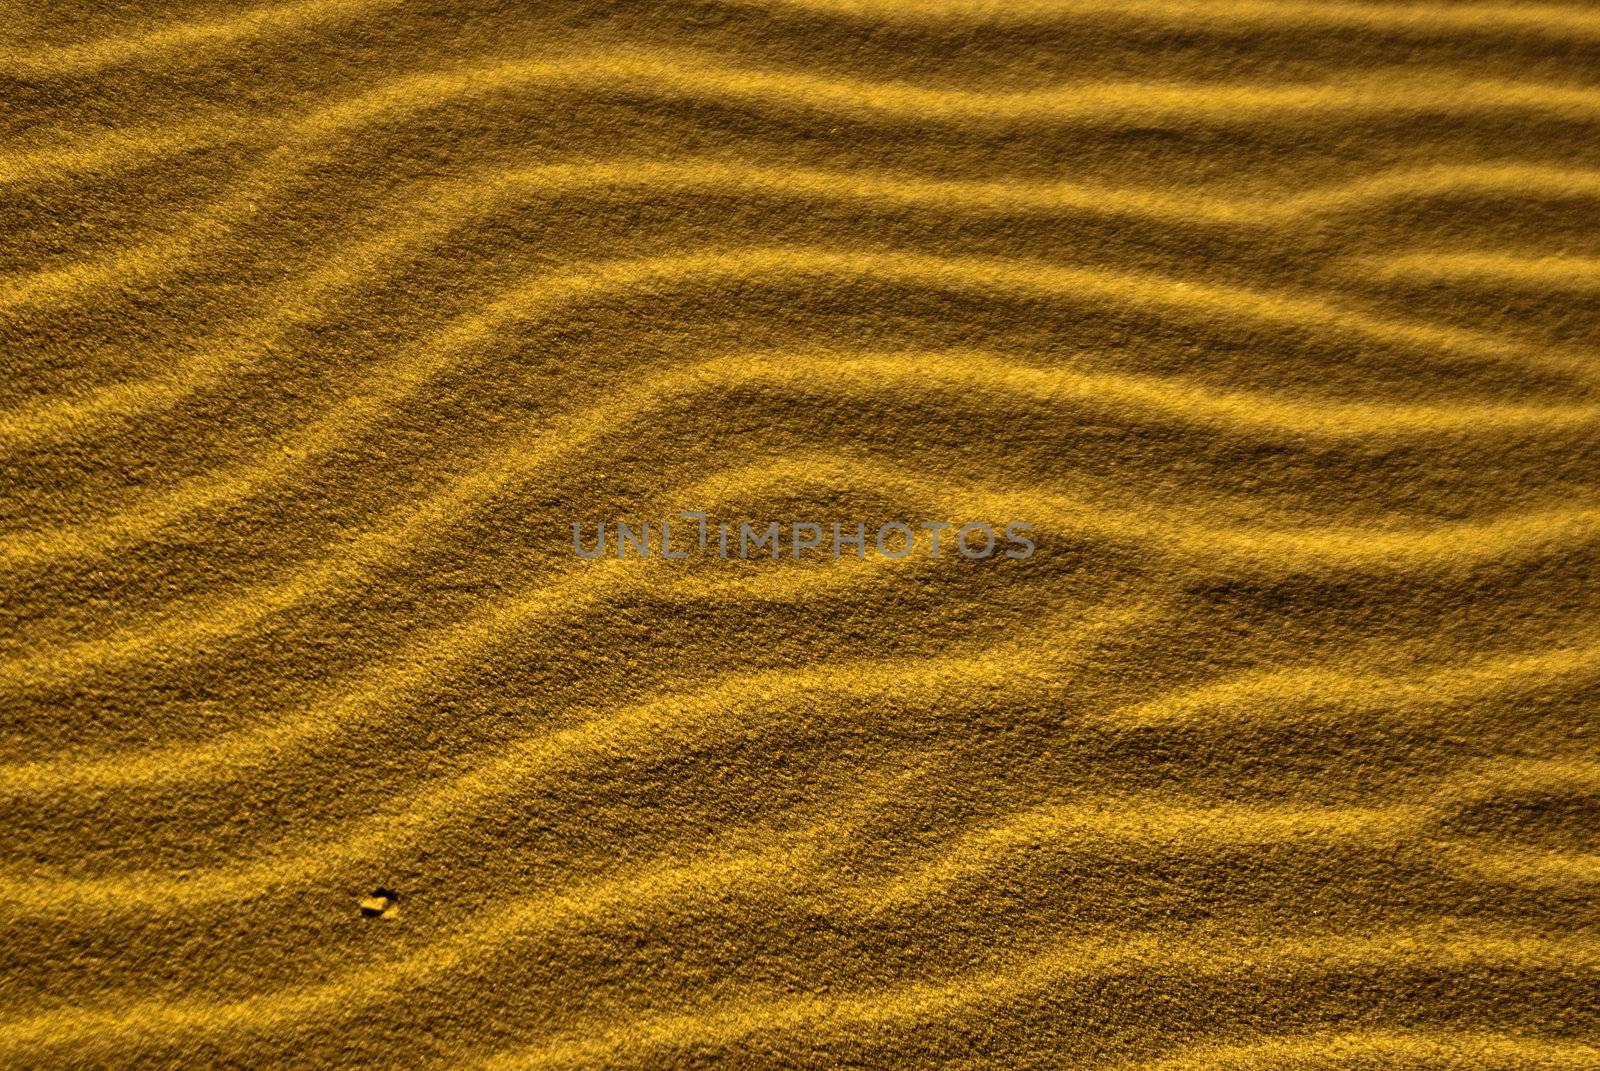 Desert sand ripples form sidewinder trails